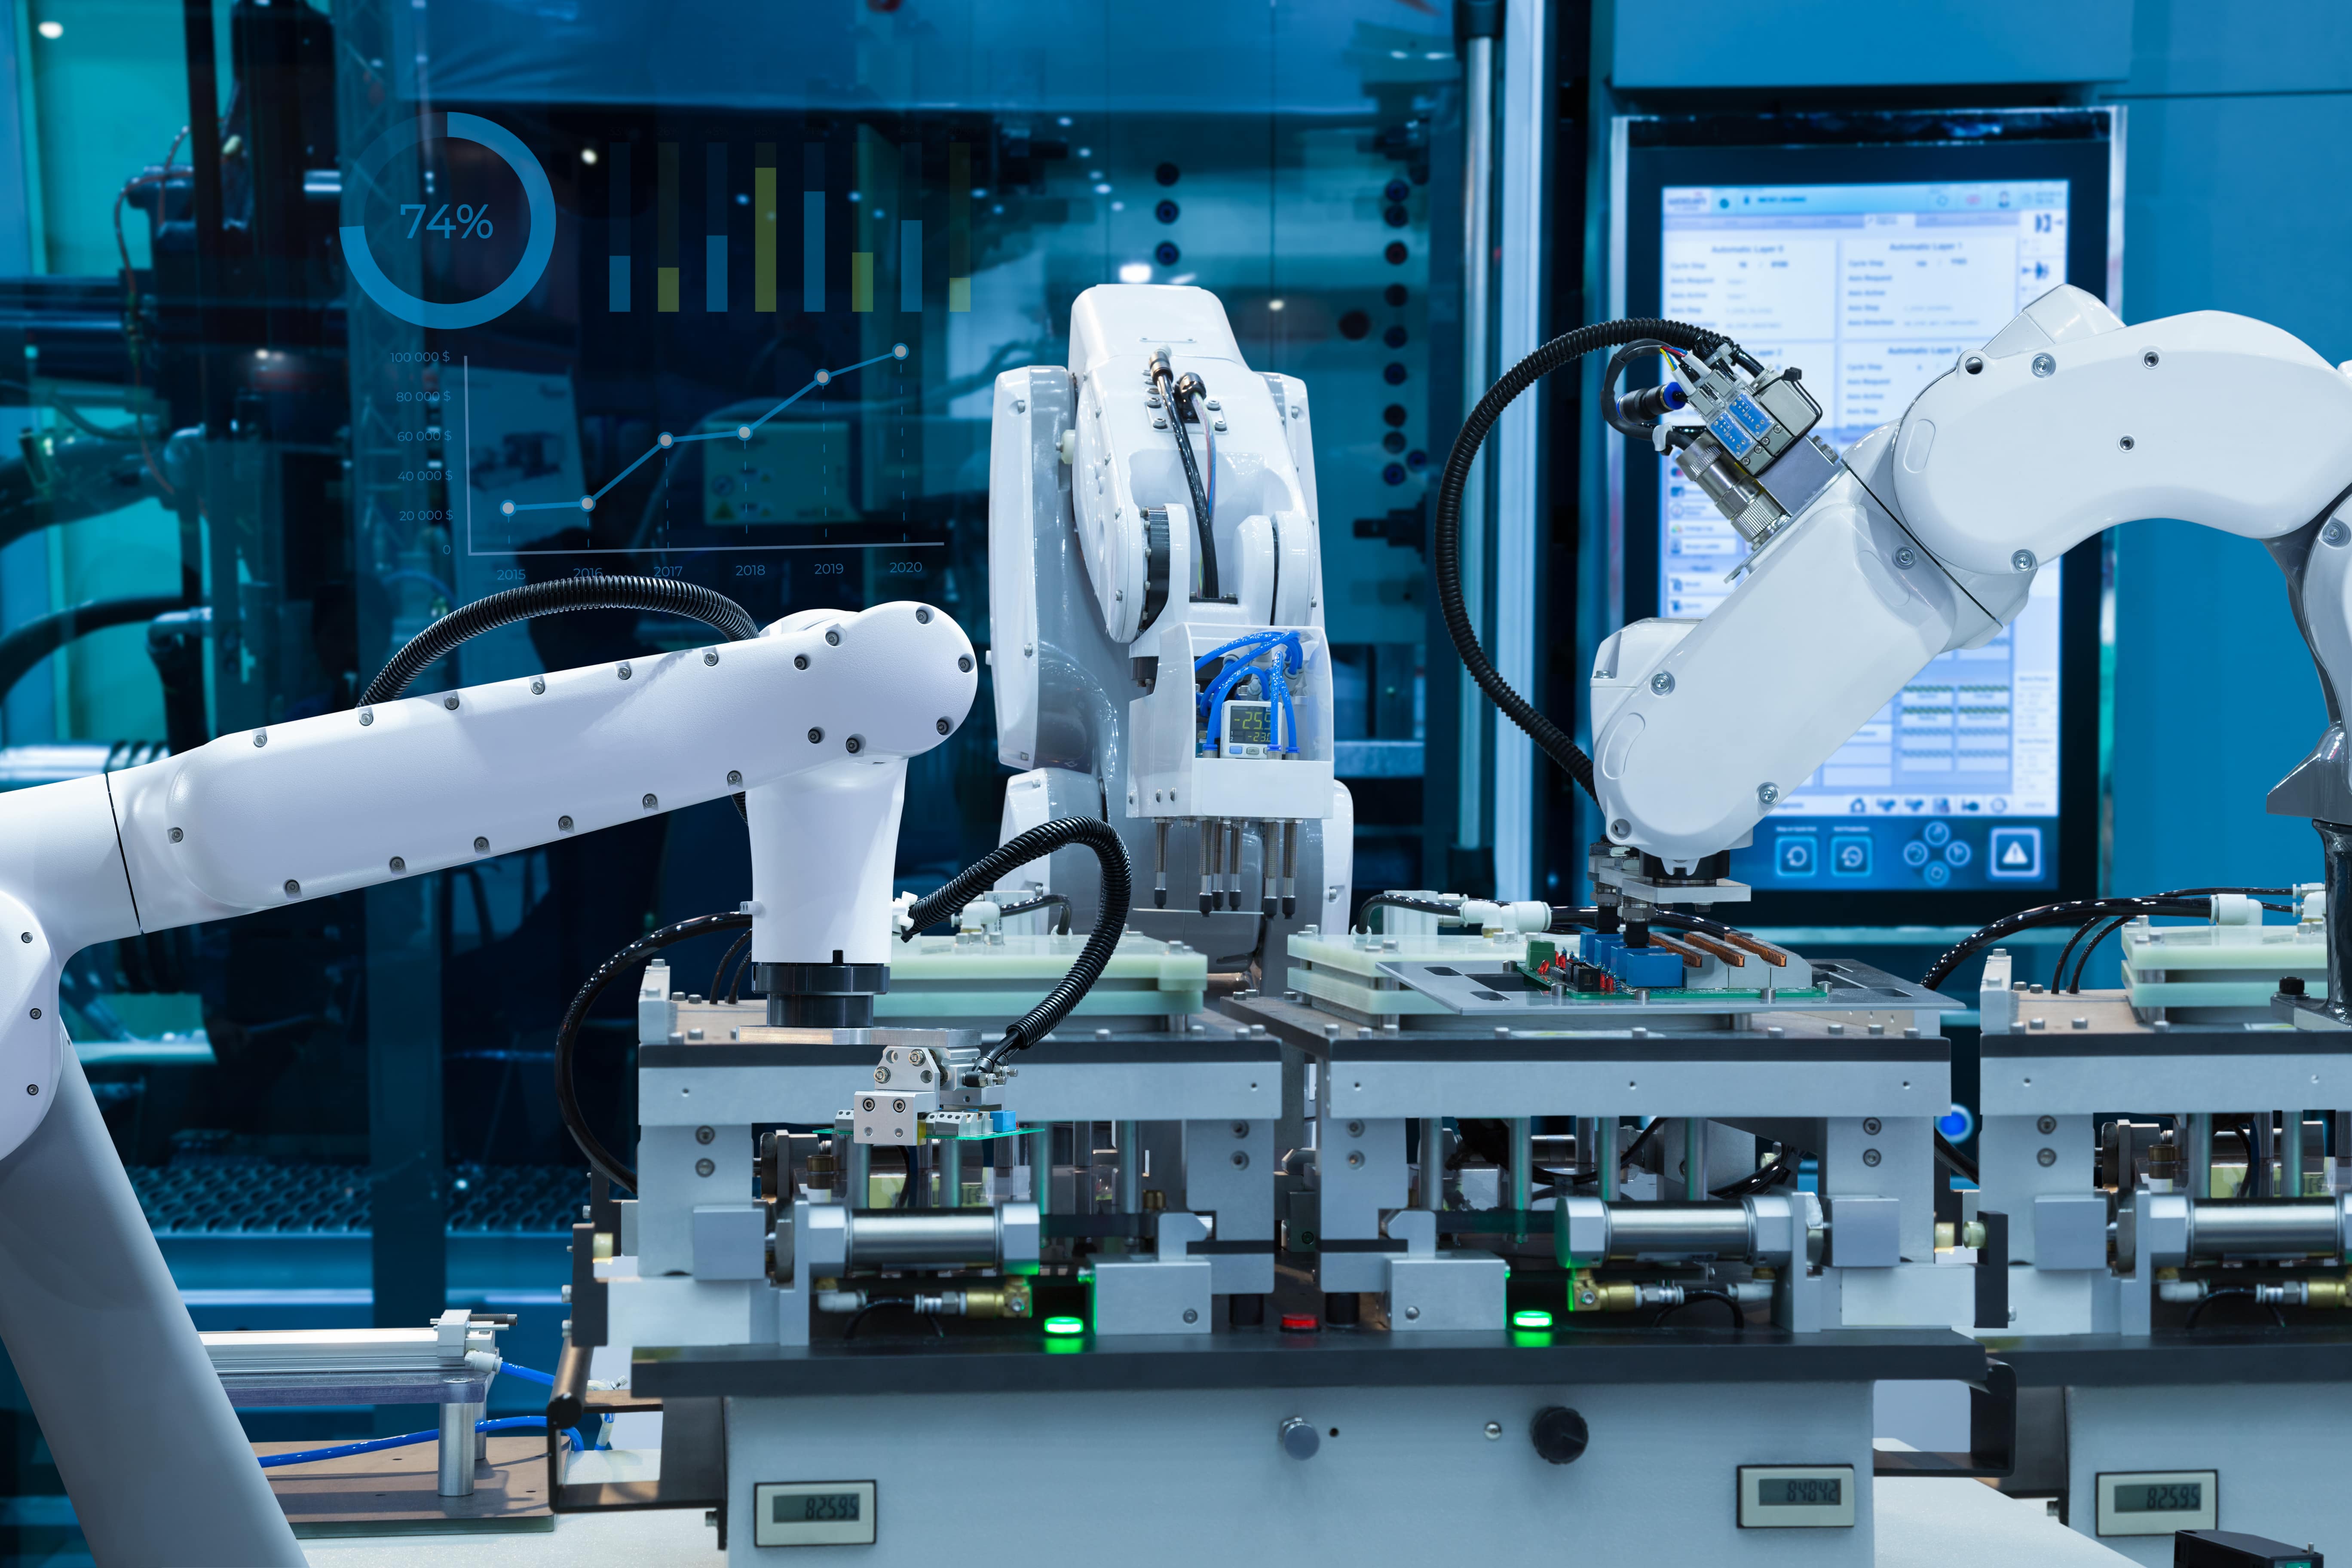 Автоматизация и роботизация технология 8 класс. Bosch industry 4.0 Robots. Робот cong. Конвейер для сборки электроники. Автоматизация производства нулевая.